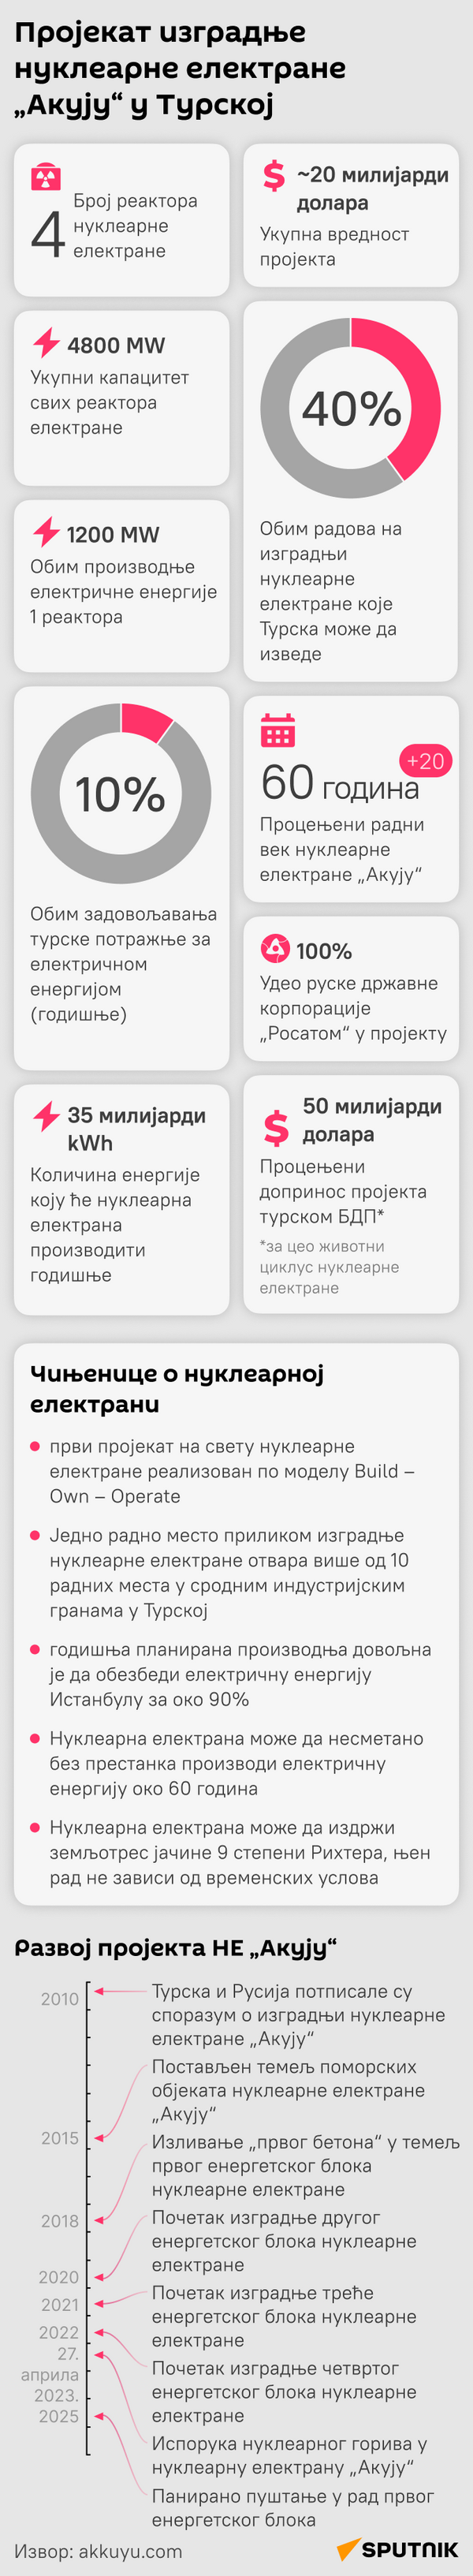 Инфографика Пројекат изградње нуклеарне електране „Акују“ у Турској Ћирилица моб - Sputnik Србија